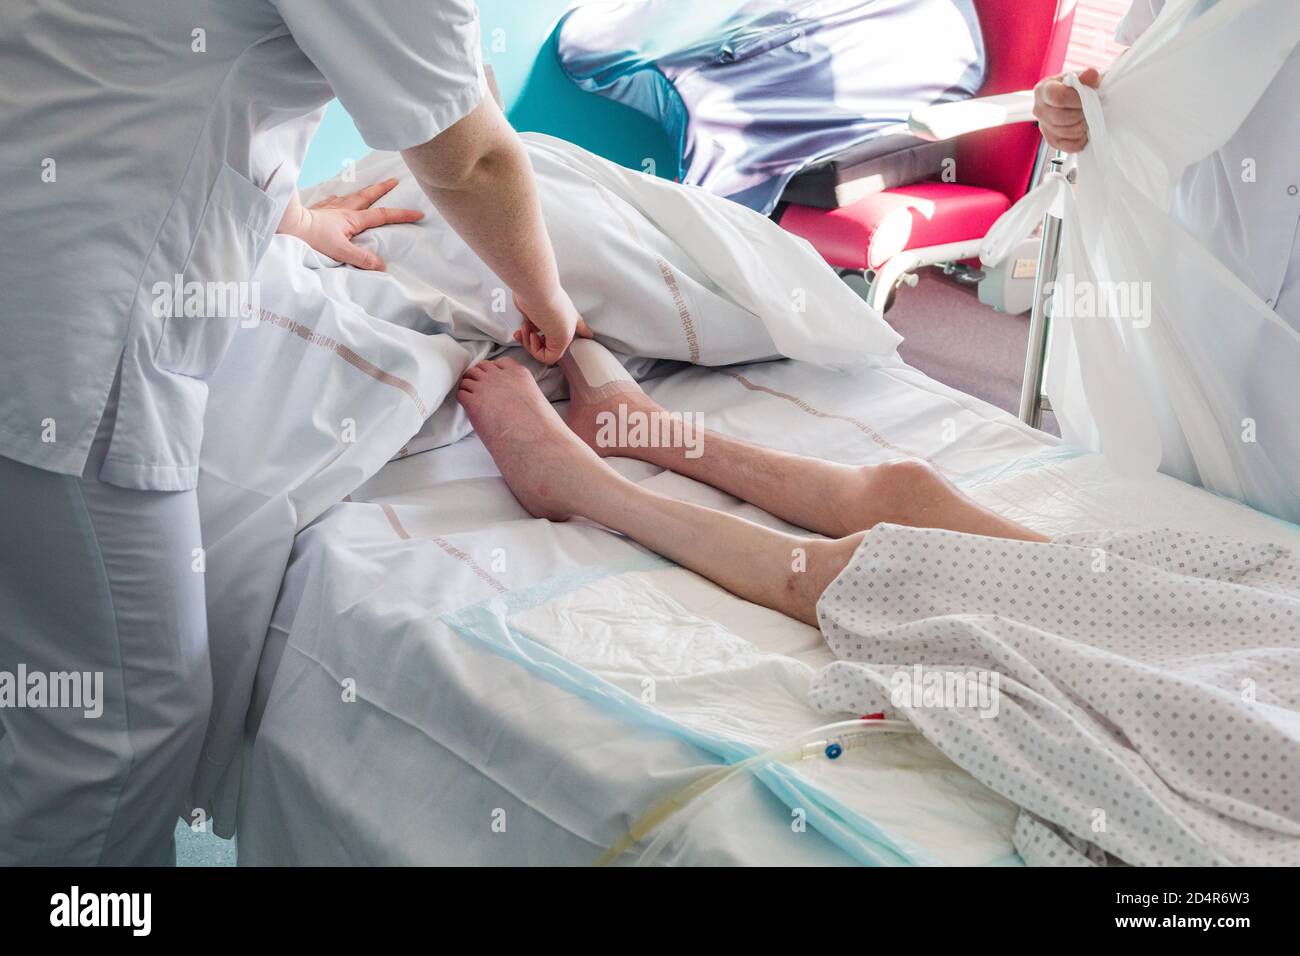 Patient quadriplégique hospitalisé dans une salle PMR (personne à mobilité réduite), avec l'appui d'une infirmière et d'un soignant. Soins, prévention et surveillance Banque D'Images